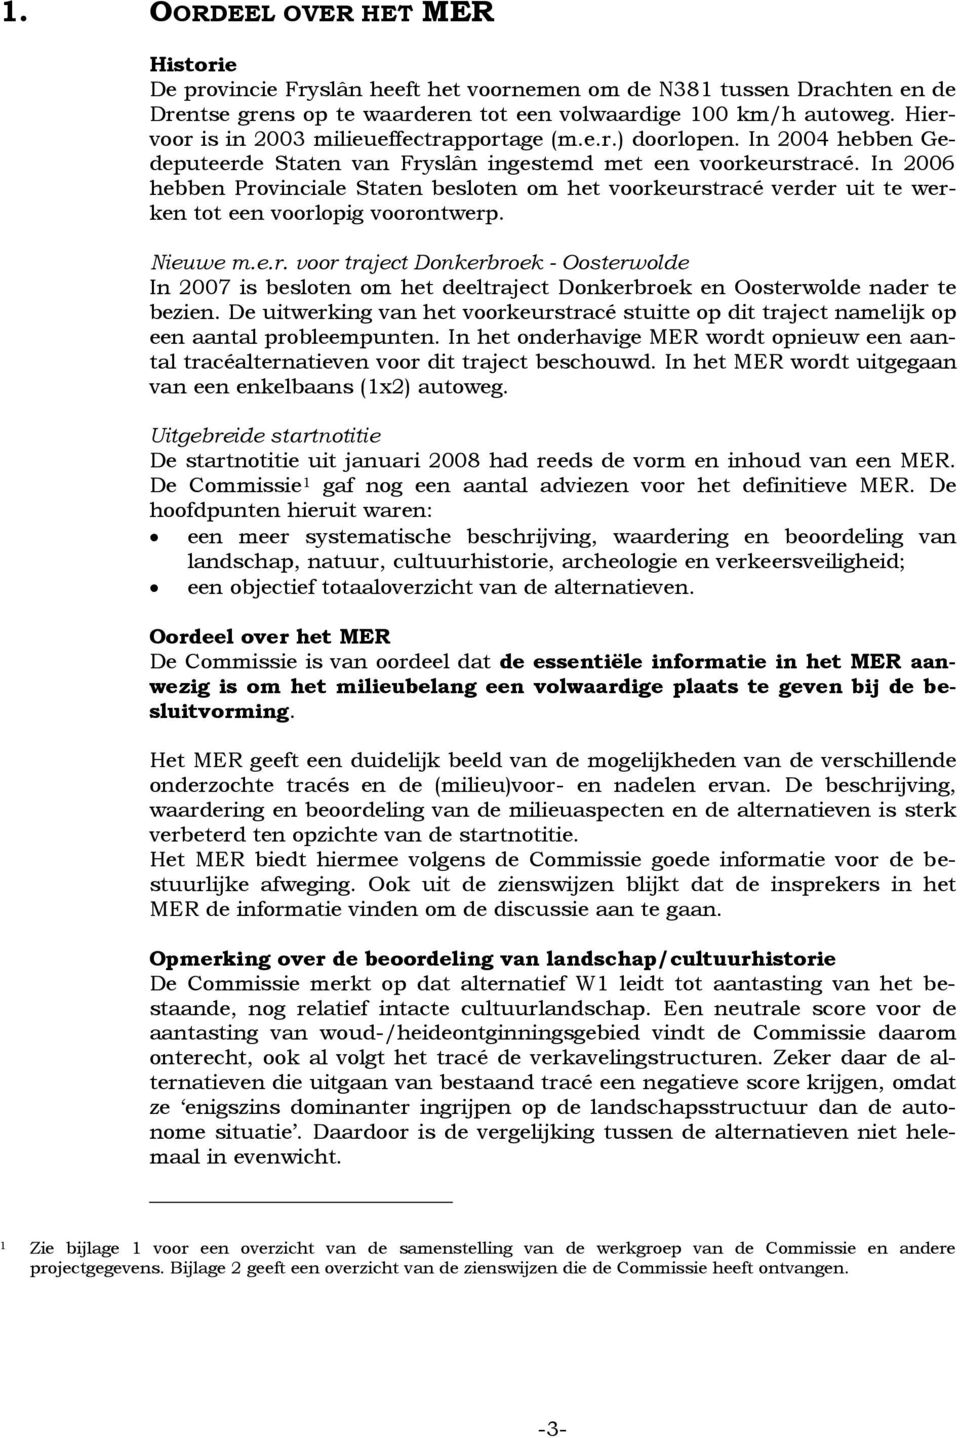 In 2006 hebben Provinciale Staten besloten om het voorkeurstracé verder uit te werken tot een voorlopig voorontwerp. Nieuwe m.e.r. voor traject Donkerbroek - Oosterwolde In 2007 is besloten om het deeltraject Donkerbroek en Oosterwolde nader te bezien.